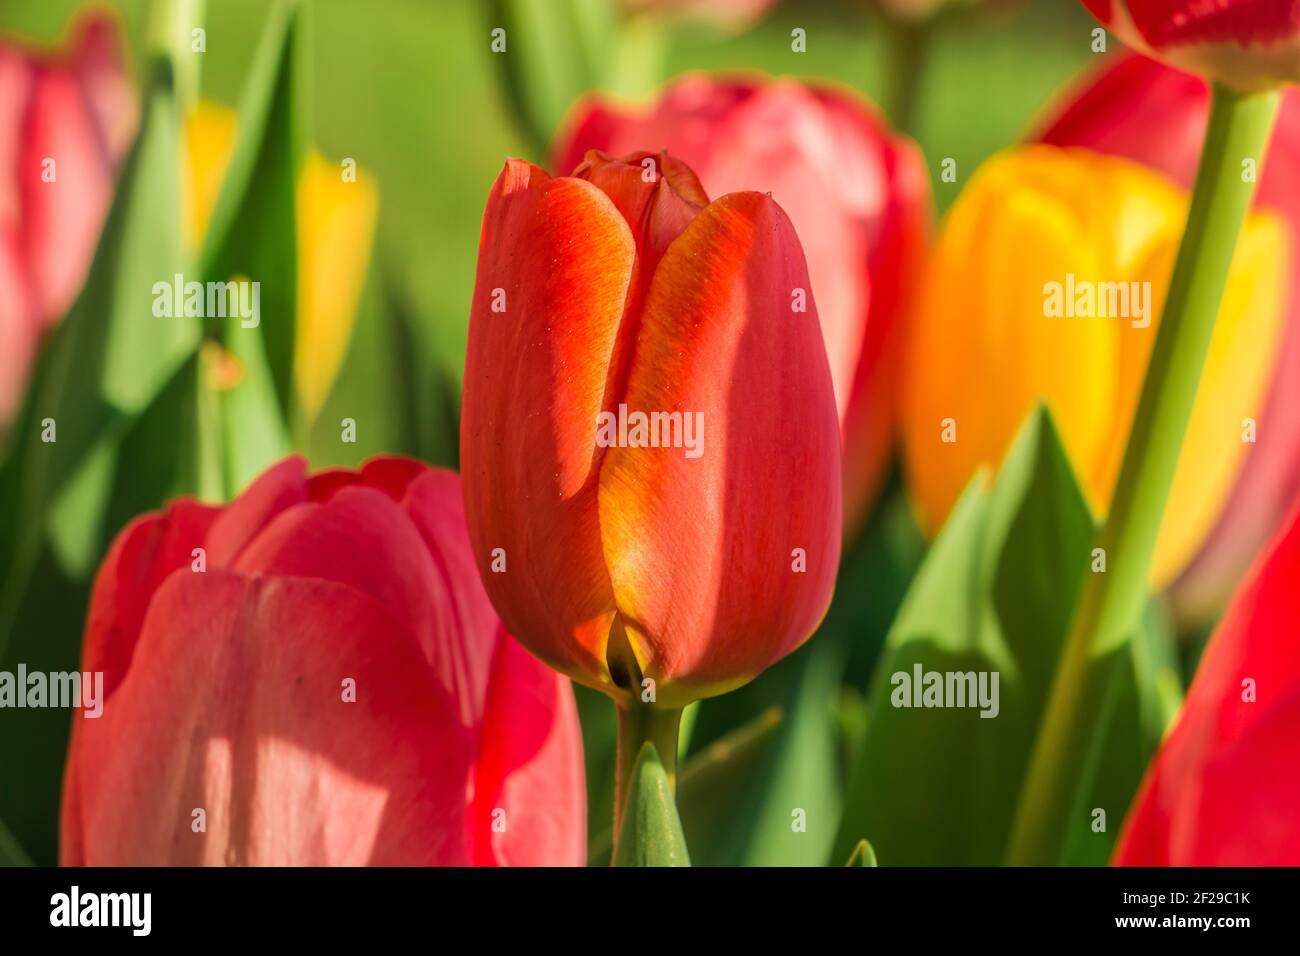 Blüte einer Tulpe im Sonnenschein. Gelb-rote und orange Farben der Blütenblätter. Grüne Blütenstände und Blätter. Detailaufnahme von mehreren Blumen Stockfoto